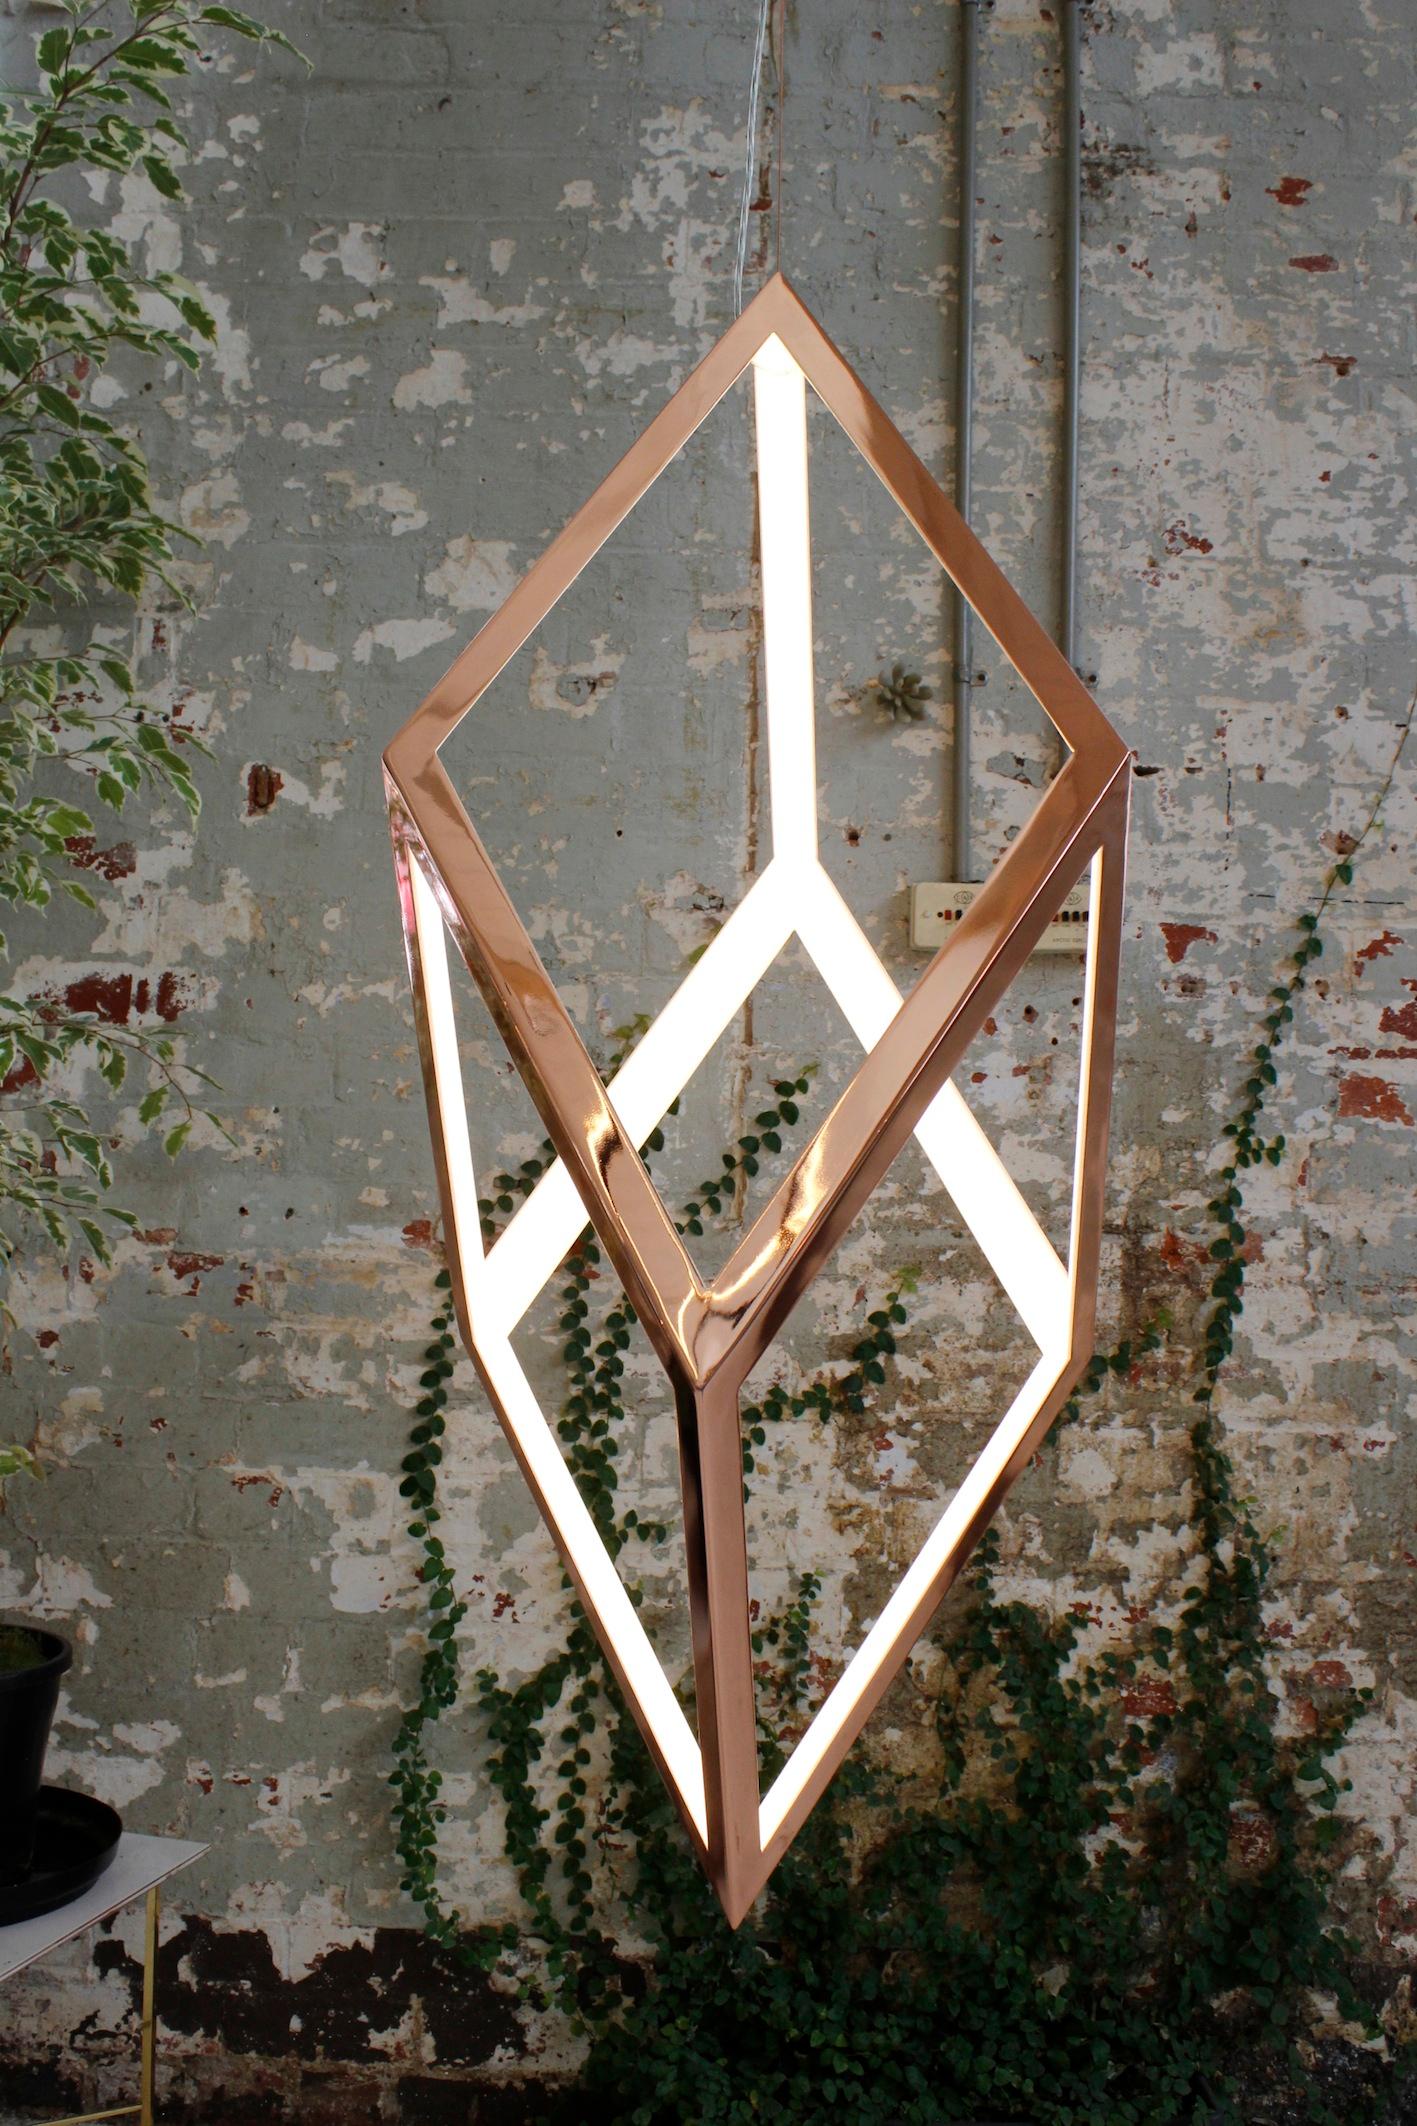 Pendentif géométrique contemporain en laiton ou en fer - ORP by Christopher Boots

Oblique Rhombic Prism est une structure épurée qui permet à la géométrie sacrée et à la lumière de ne faire qu'un. ORP privilégie la simplicité et la forme, en